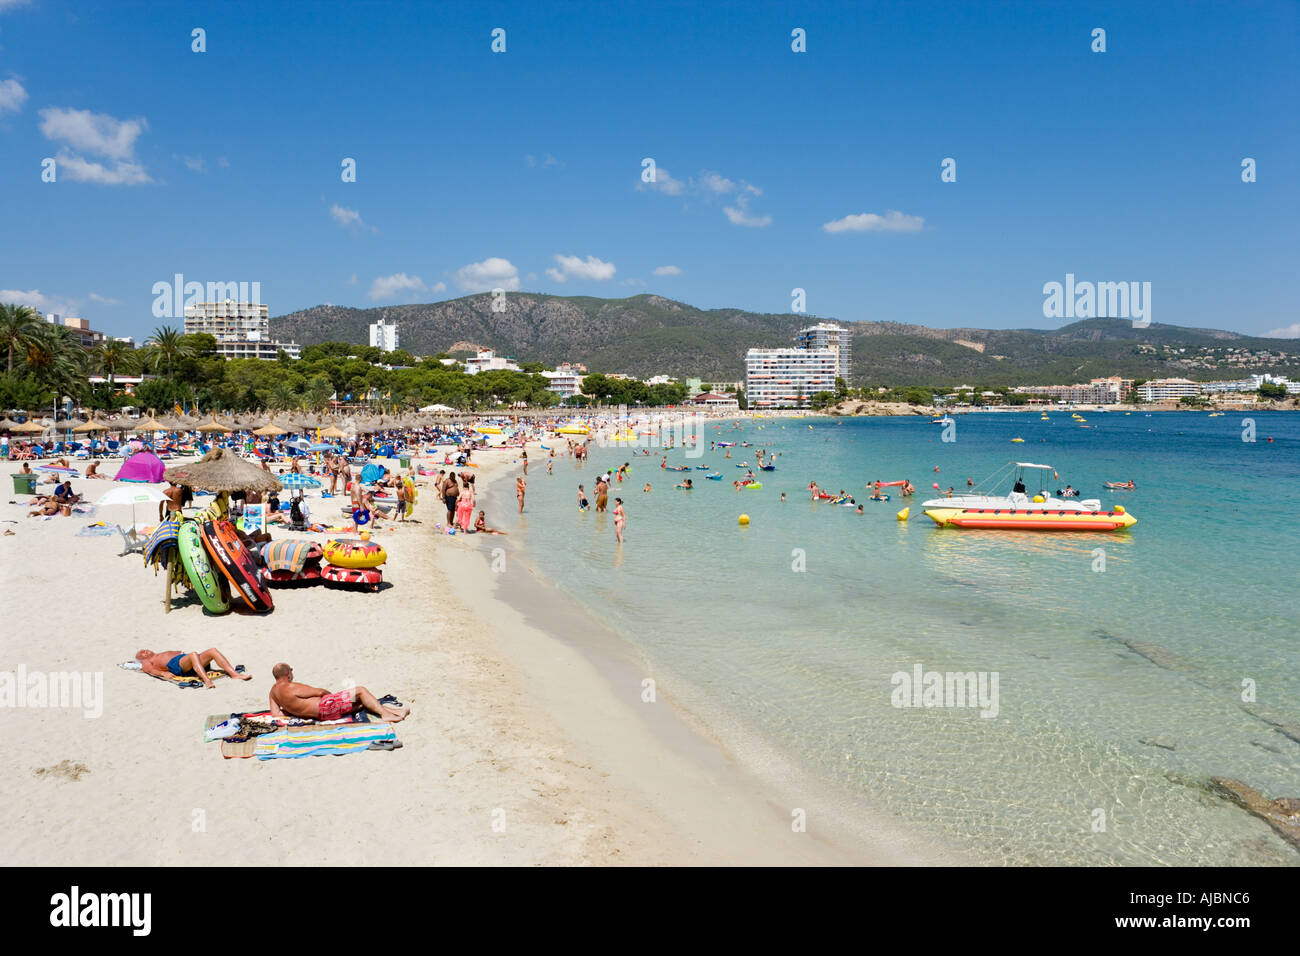 Spiaggia Palma Nova, la baia di Palma di Maiorca, isole Baleari, Spagna Foto Stock